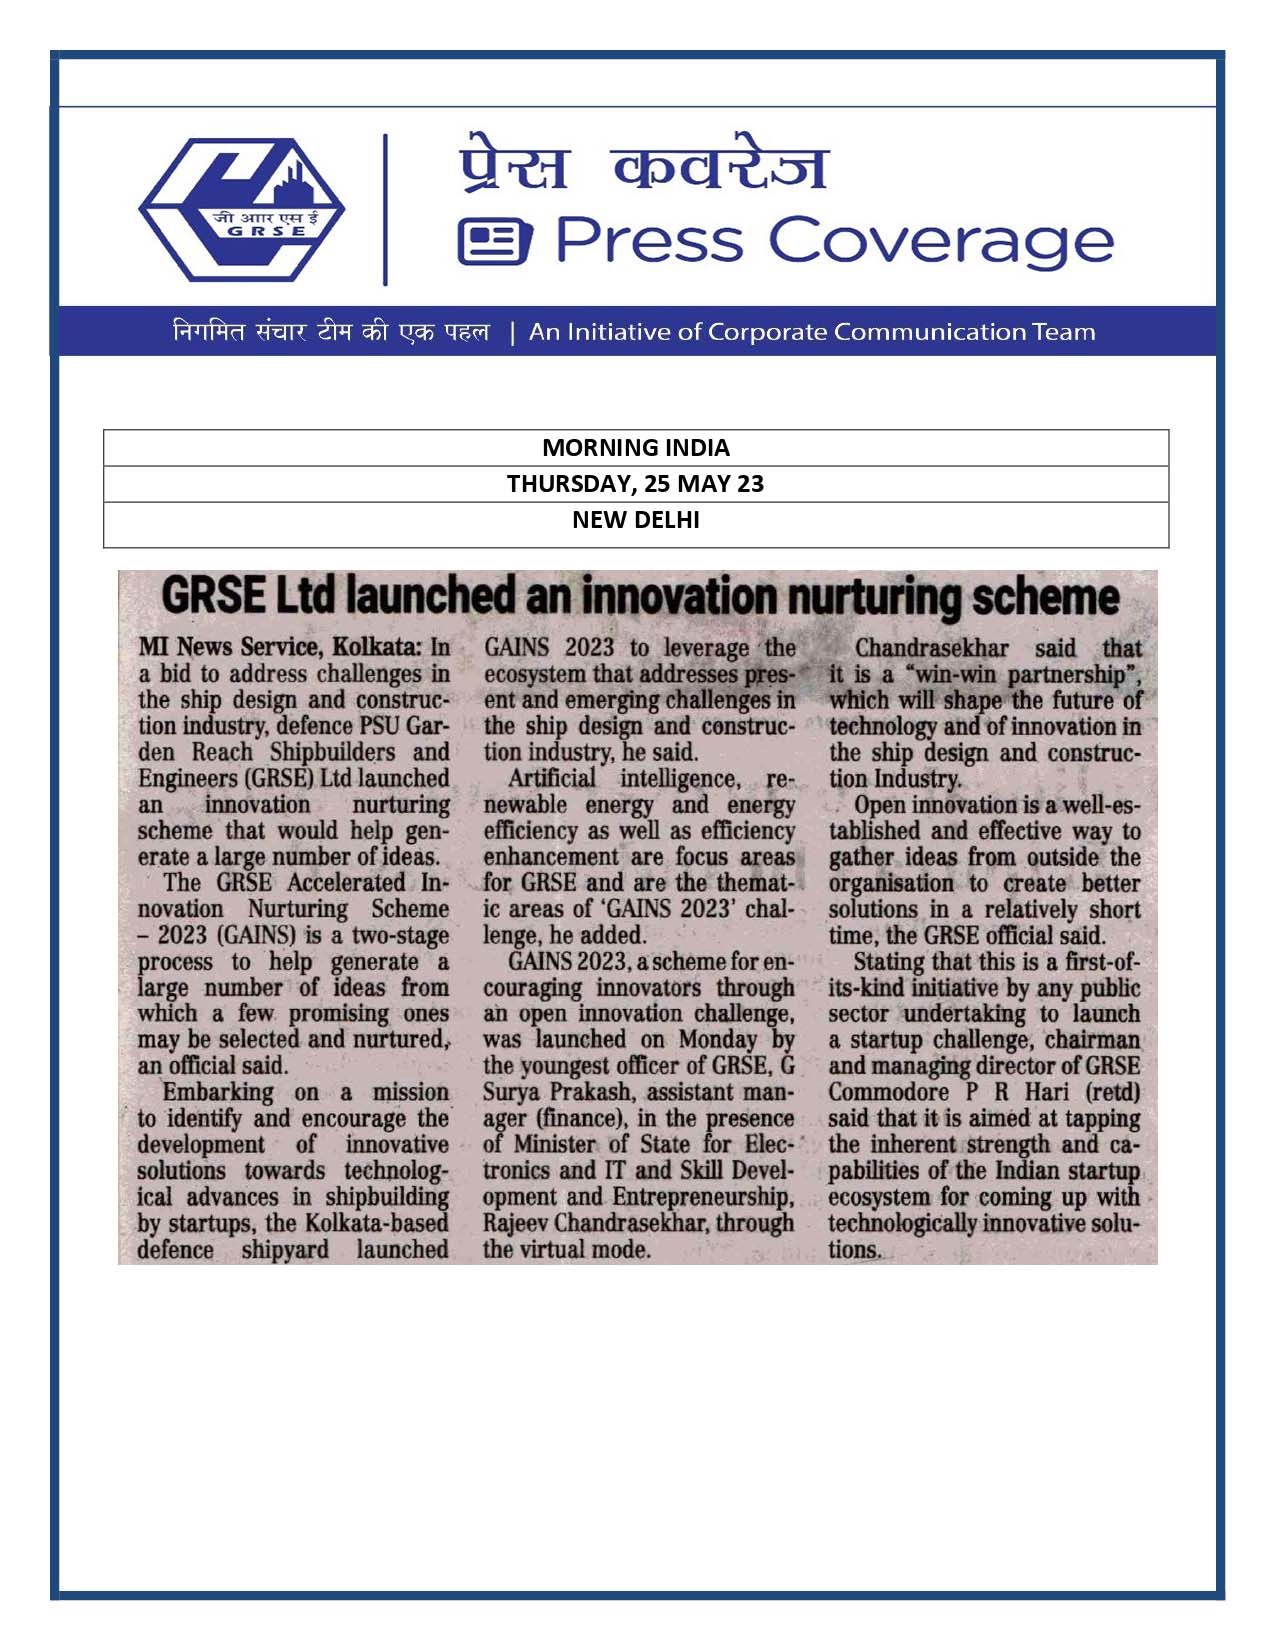 GRSE Ltd Launched Innovation Nurturing Scheme